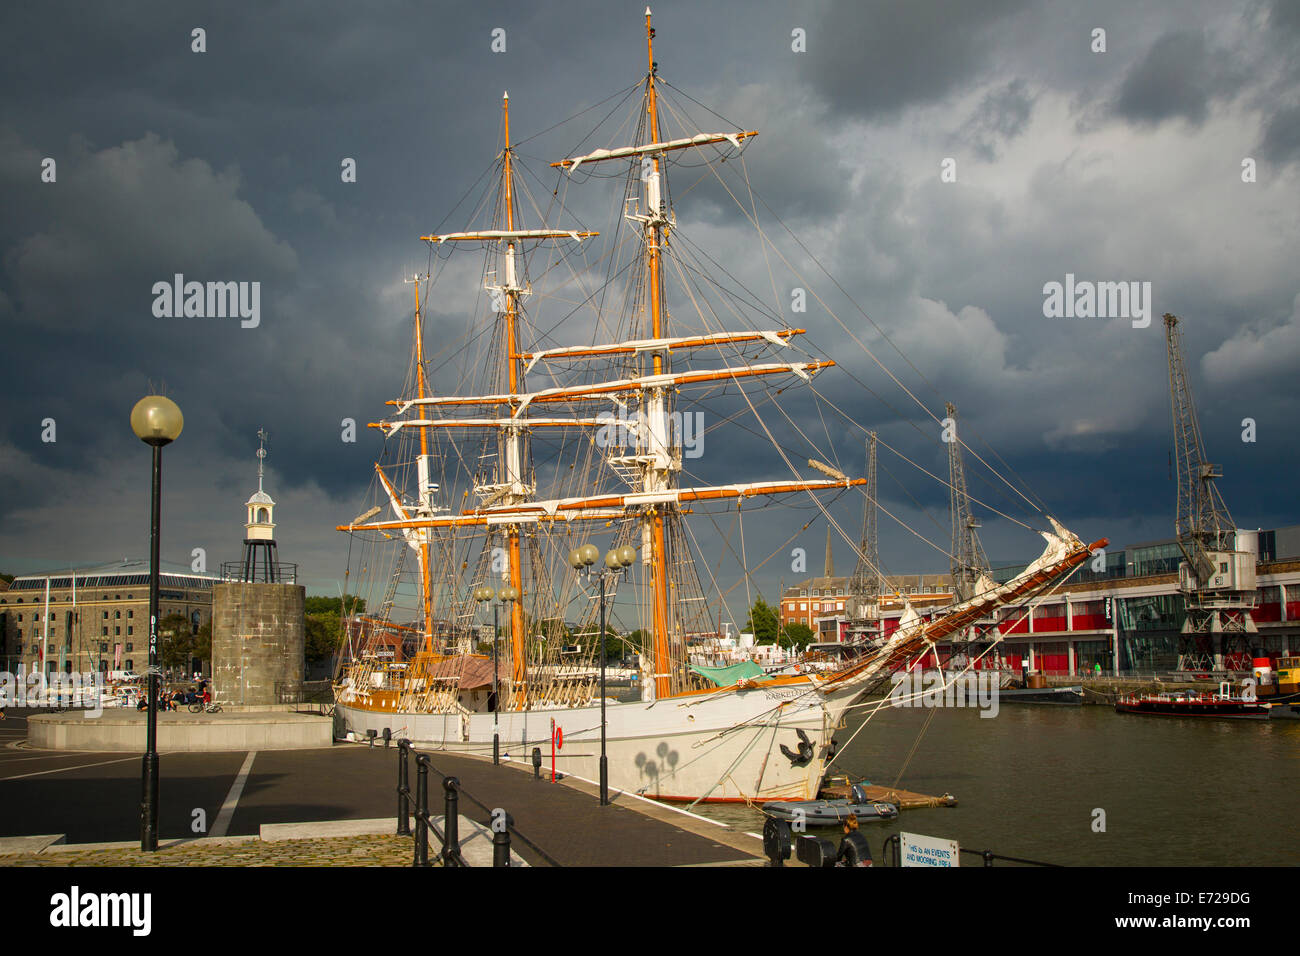 Les nuages de tempête survolez le Kaskelot SS dans le port de Bristol, Angleterre Banque D'Images